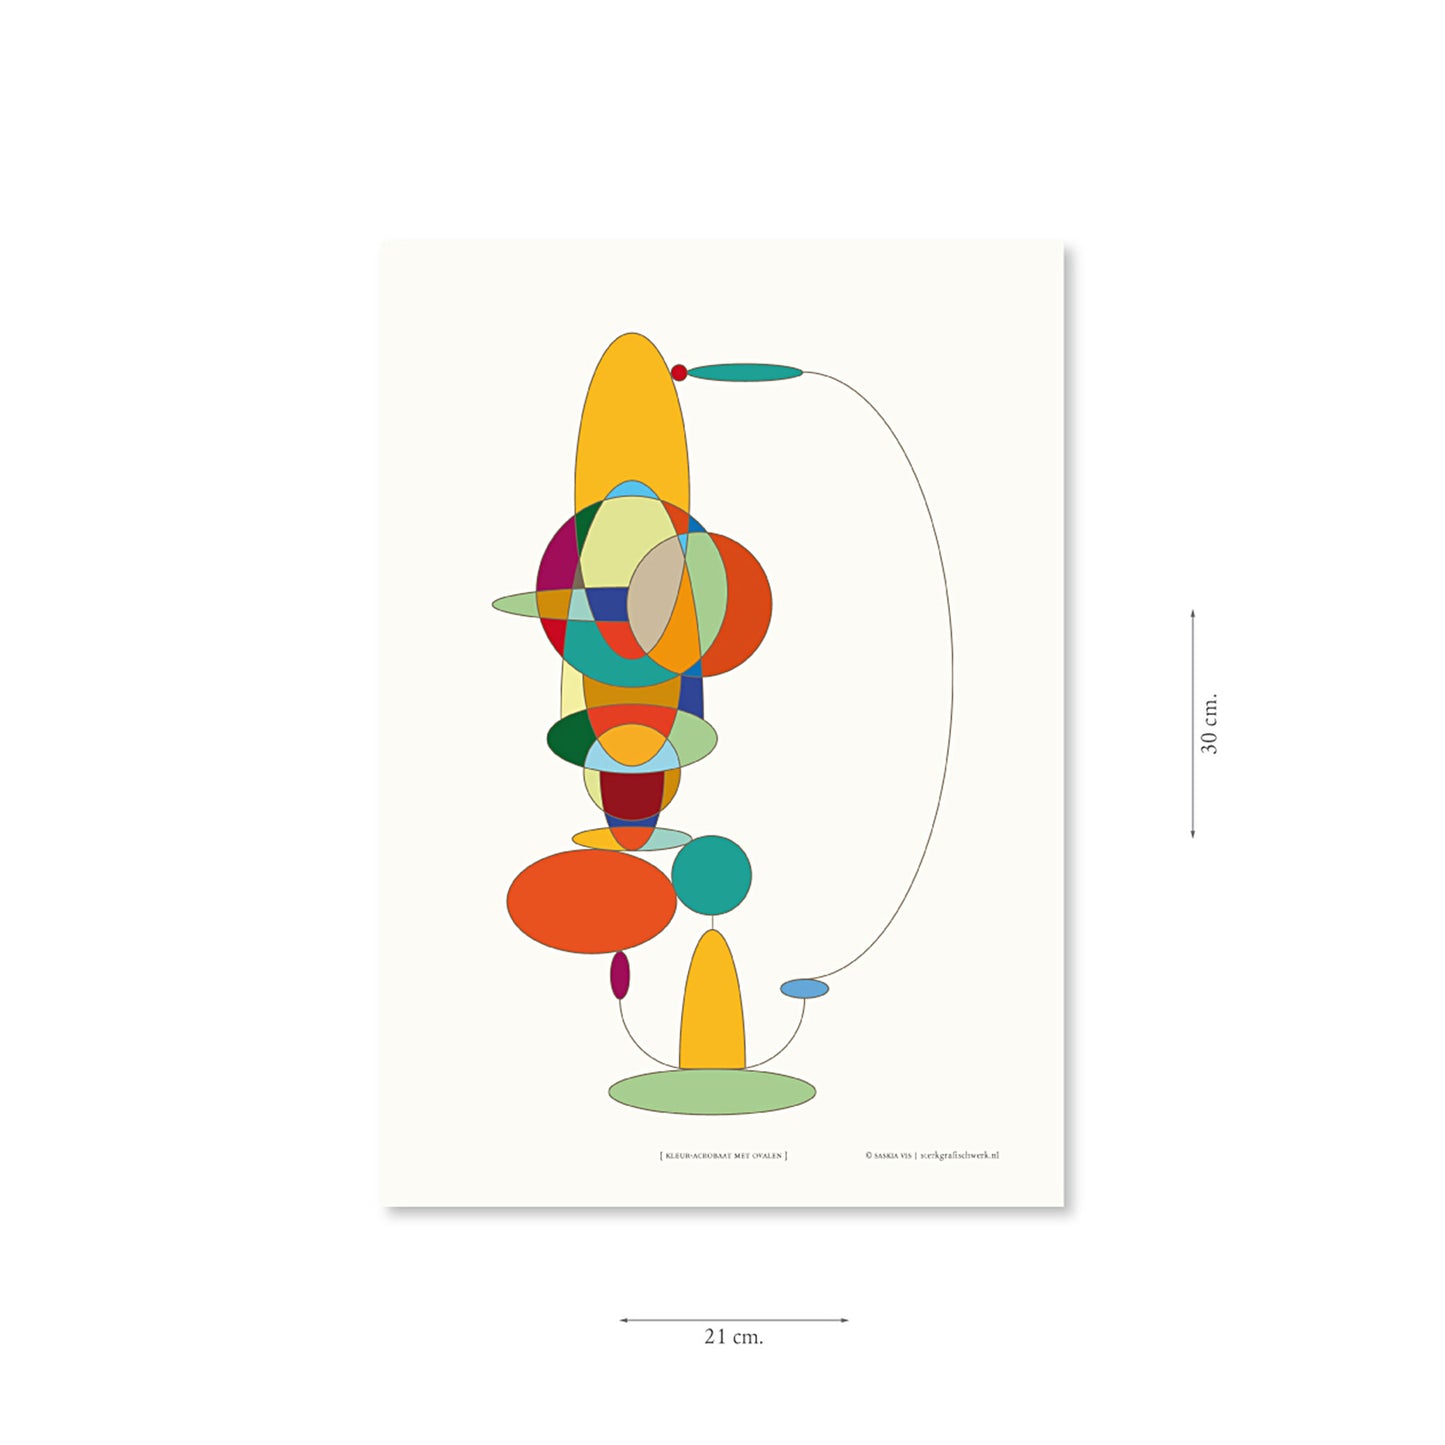 Productafbeelding, poster "kleur-acrobaat met ovalen", met aanduiding van het formaat erop weergegeven 21 x 30 cm